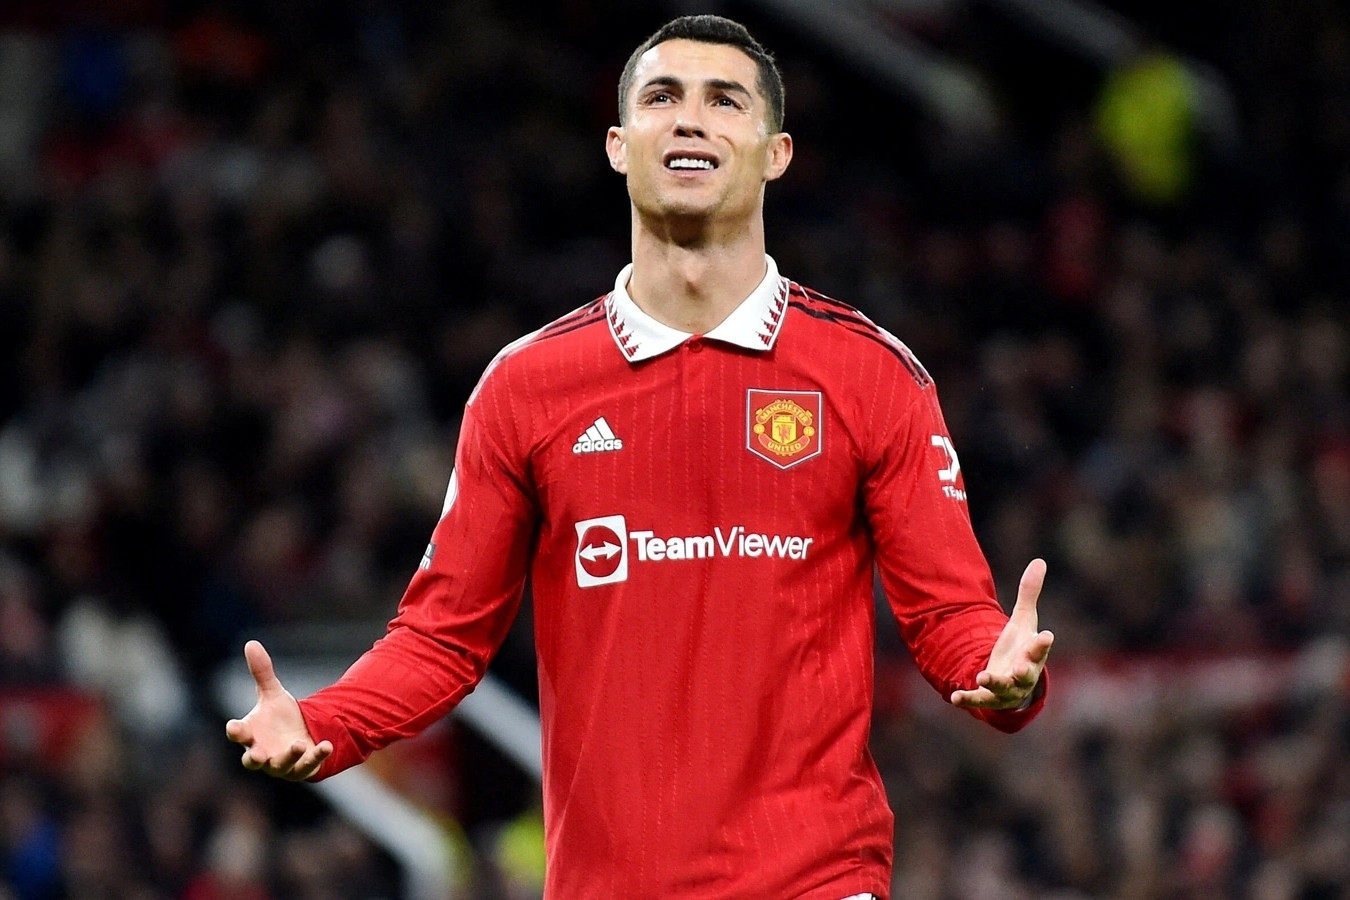 NÓNG: Man Utd tuyên bố sốc, chấm dứt hợp đồng với C.Ronaldo - 1